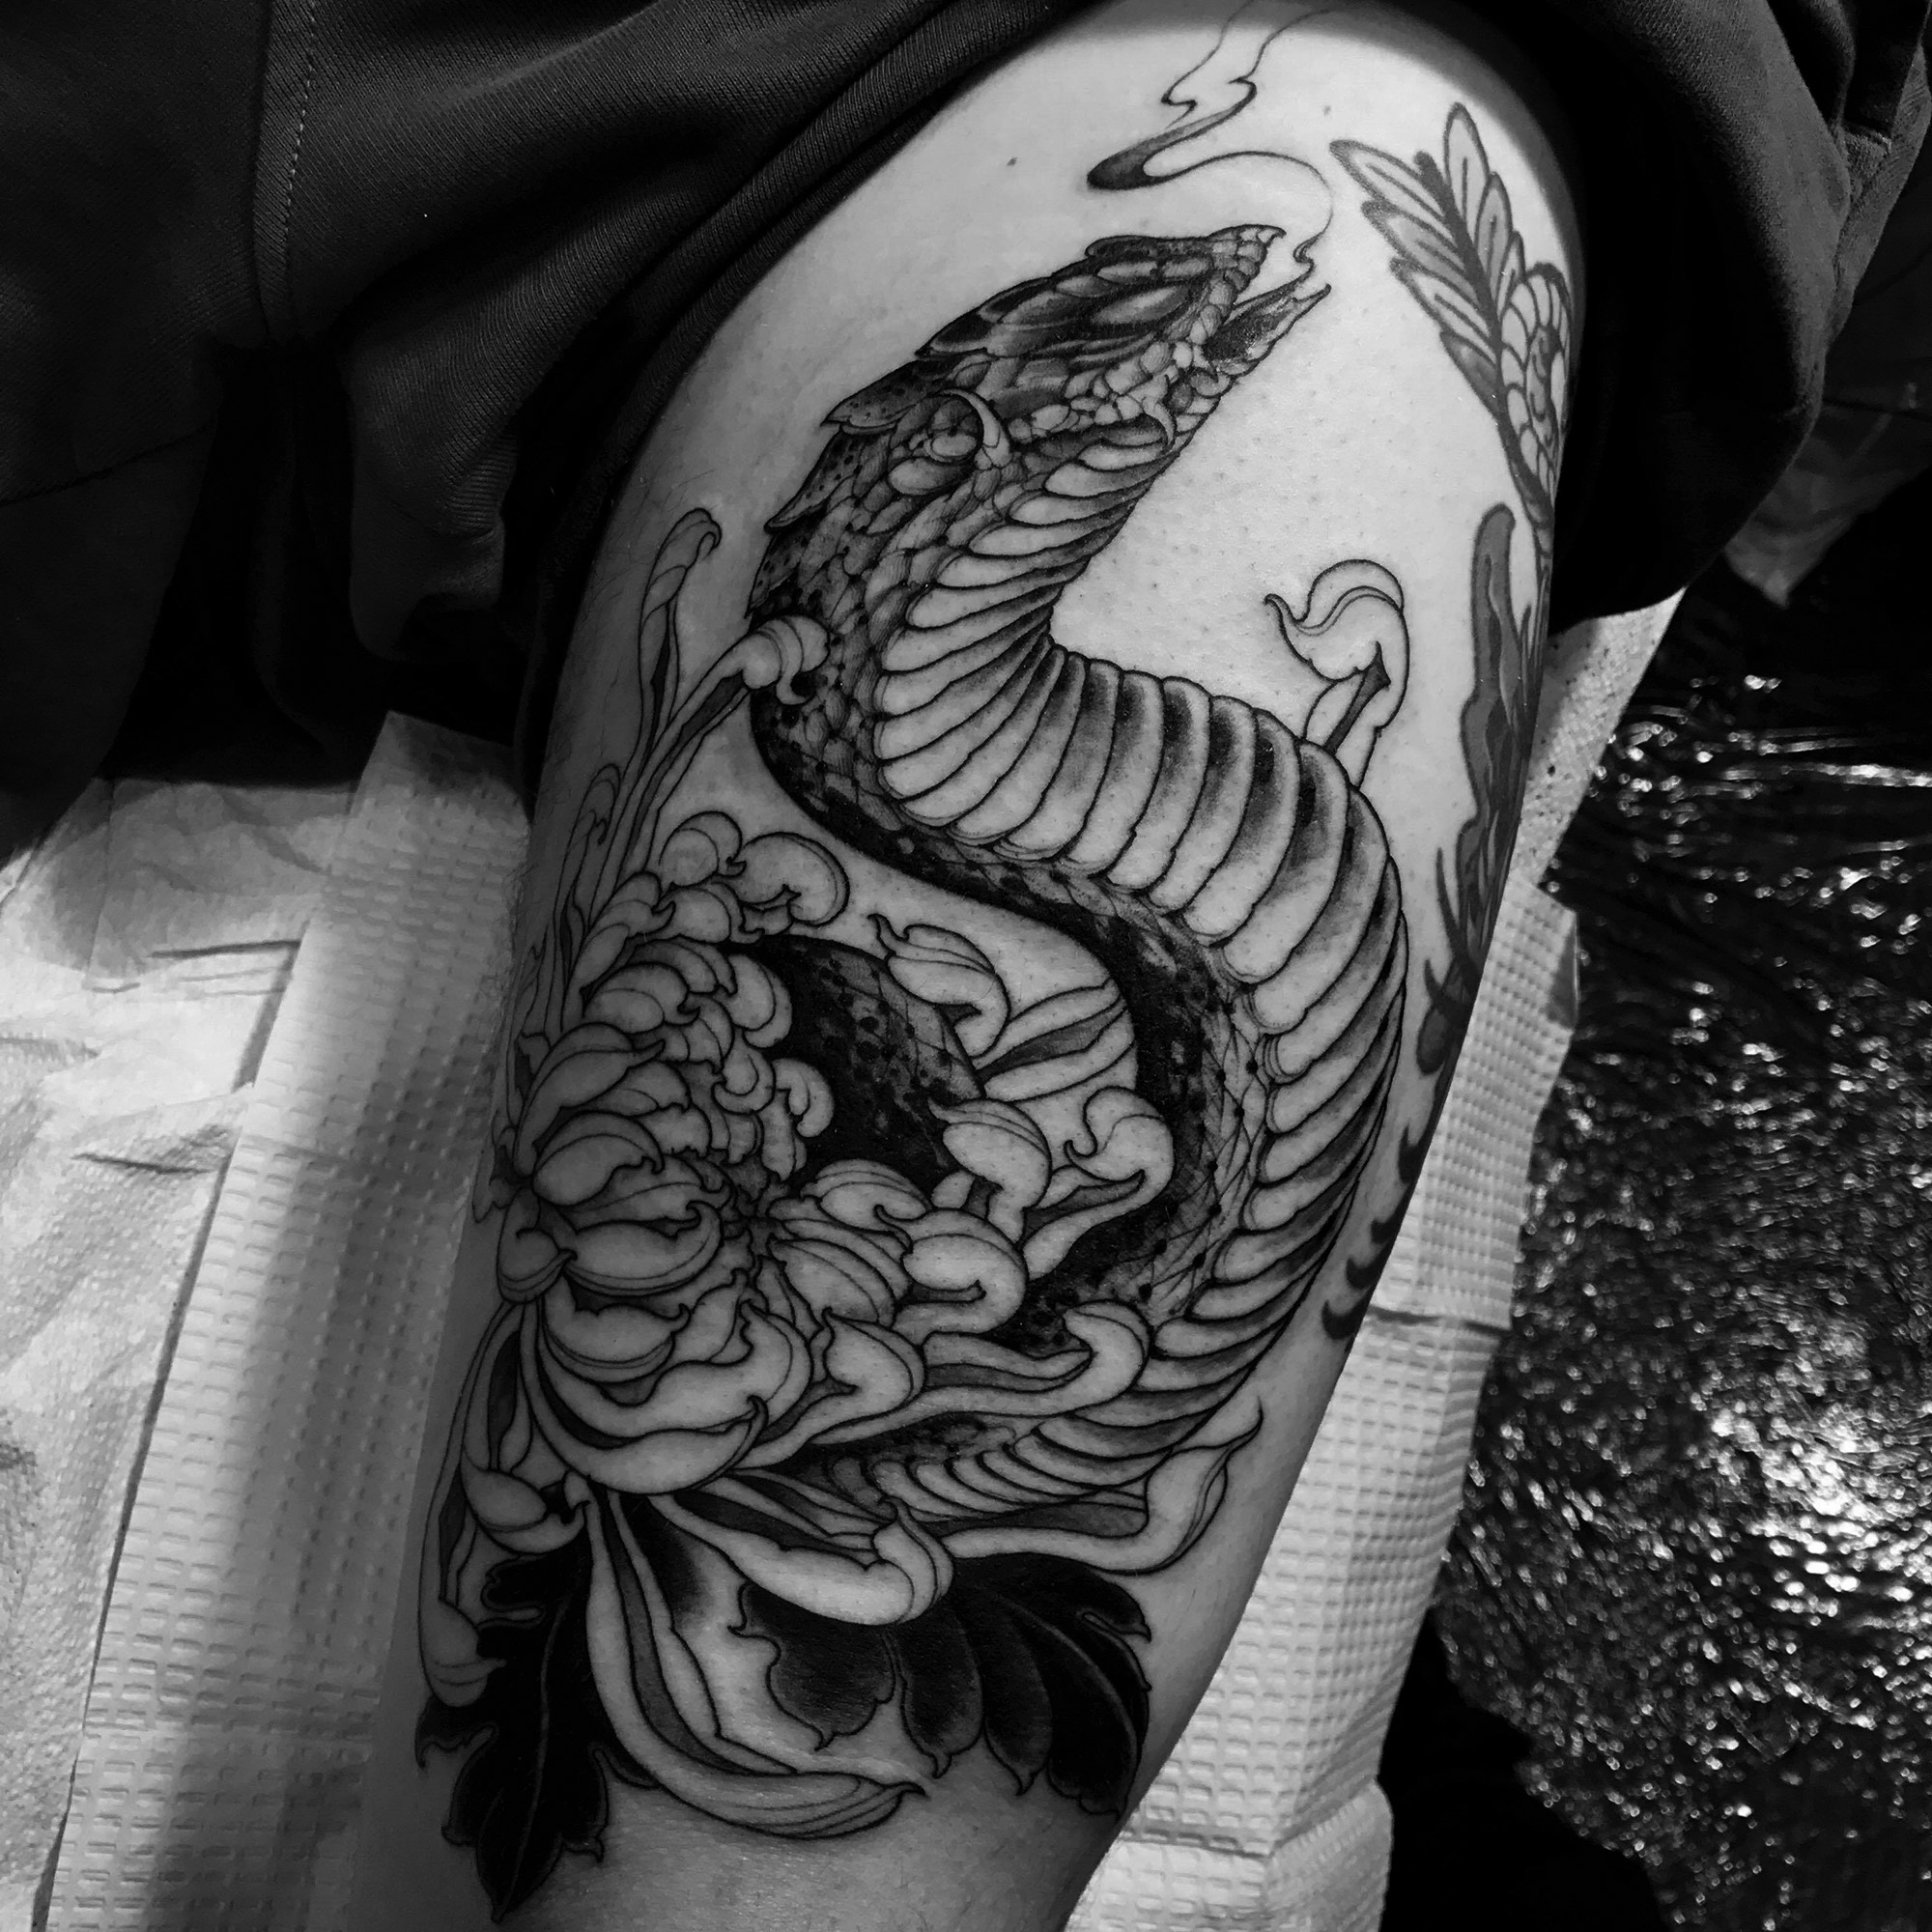 Joao Bosco - snake and flower tattoo, cover